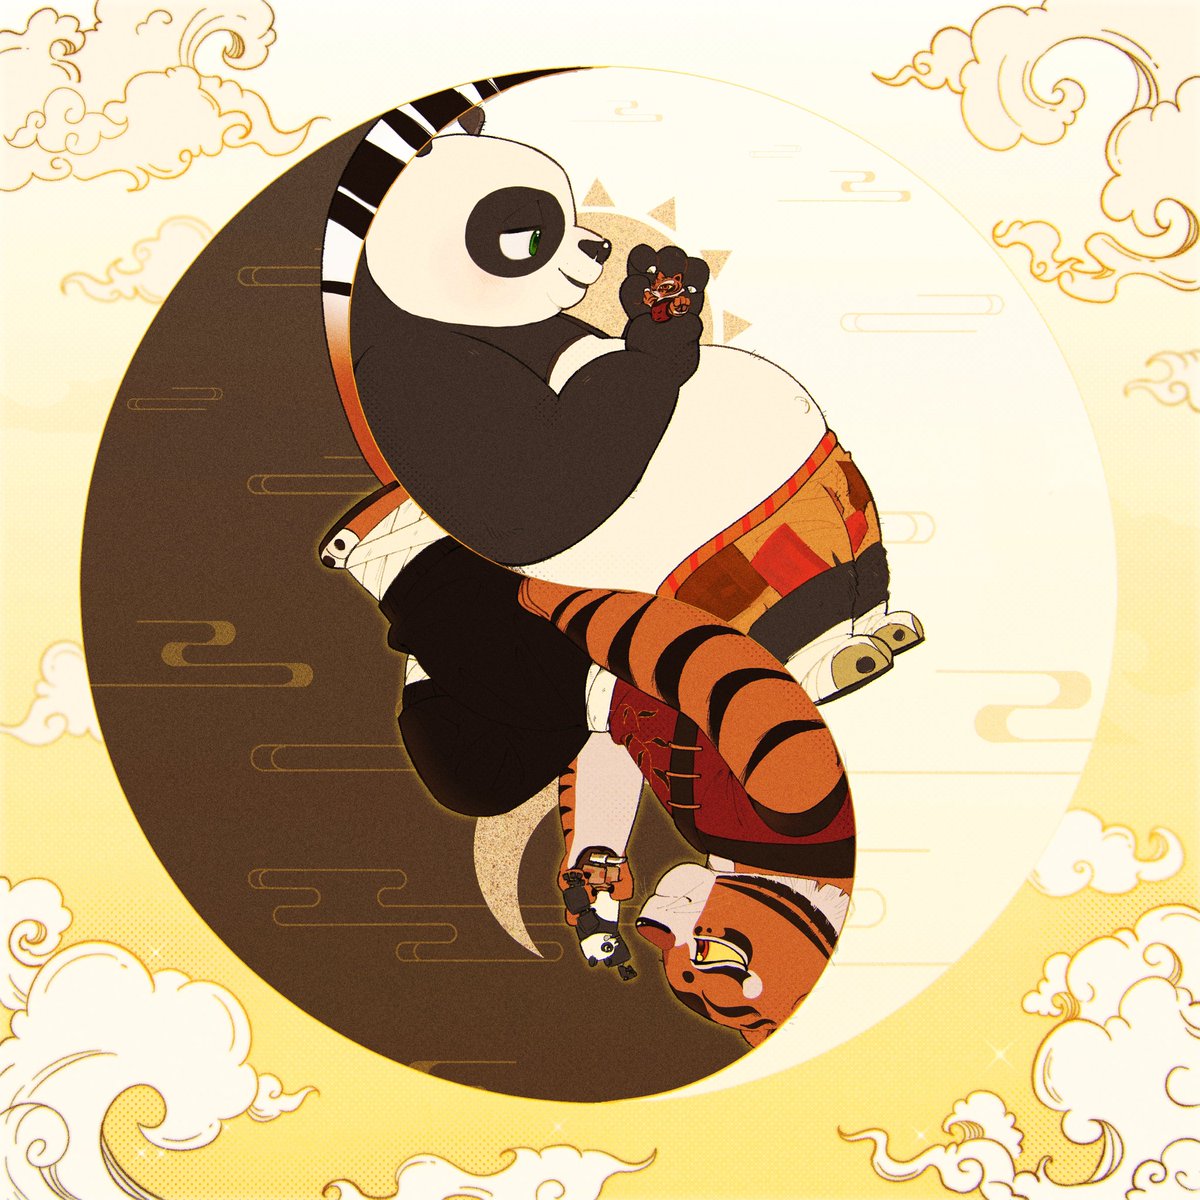 Yin and Yang ☯️ #KungFuPanda #tipo #tigress #po